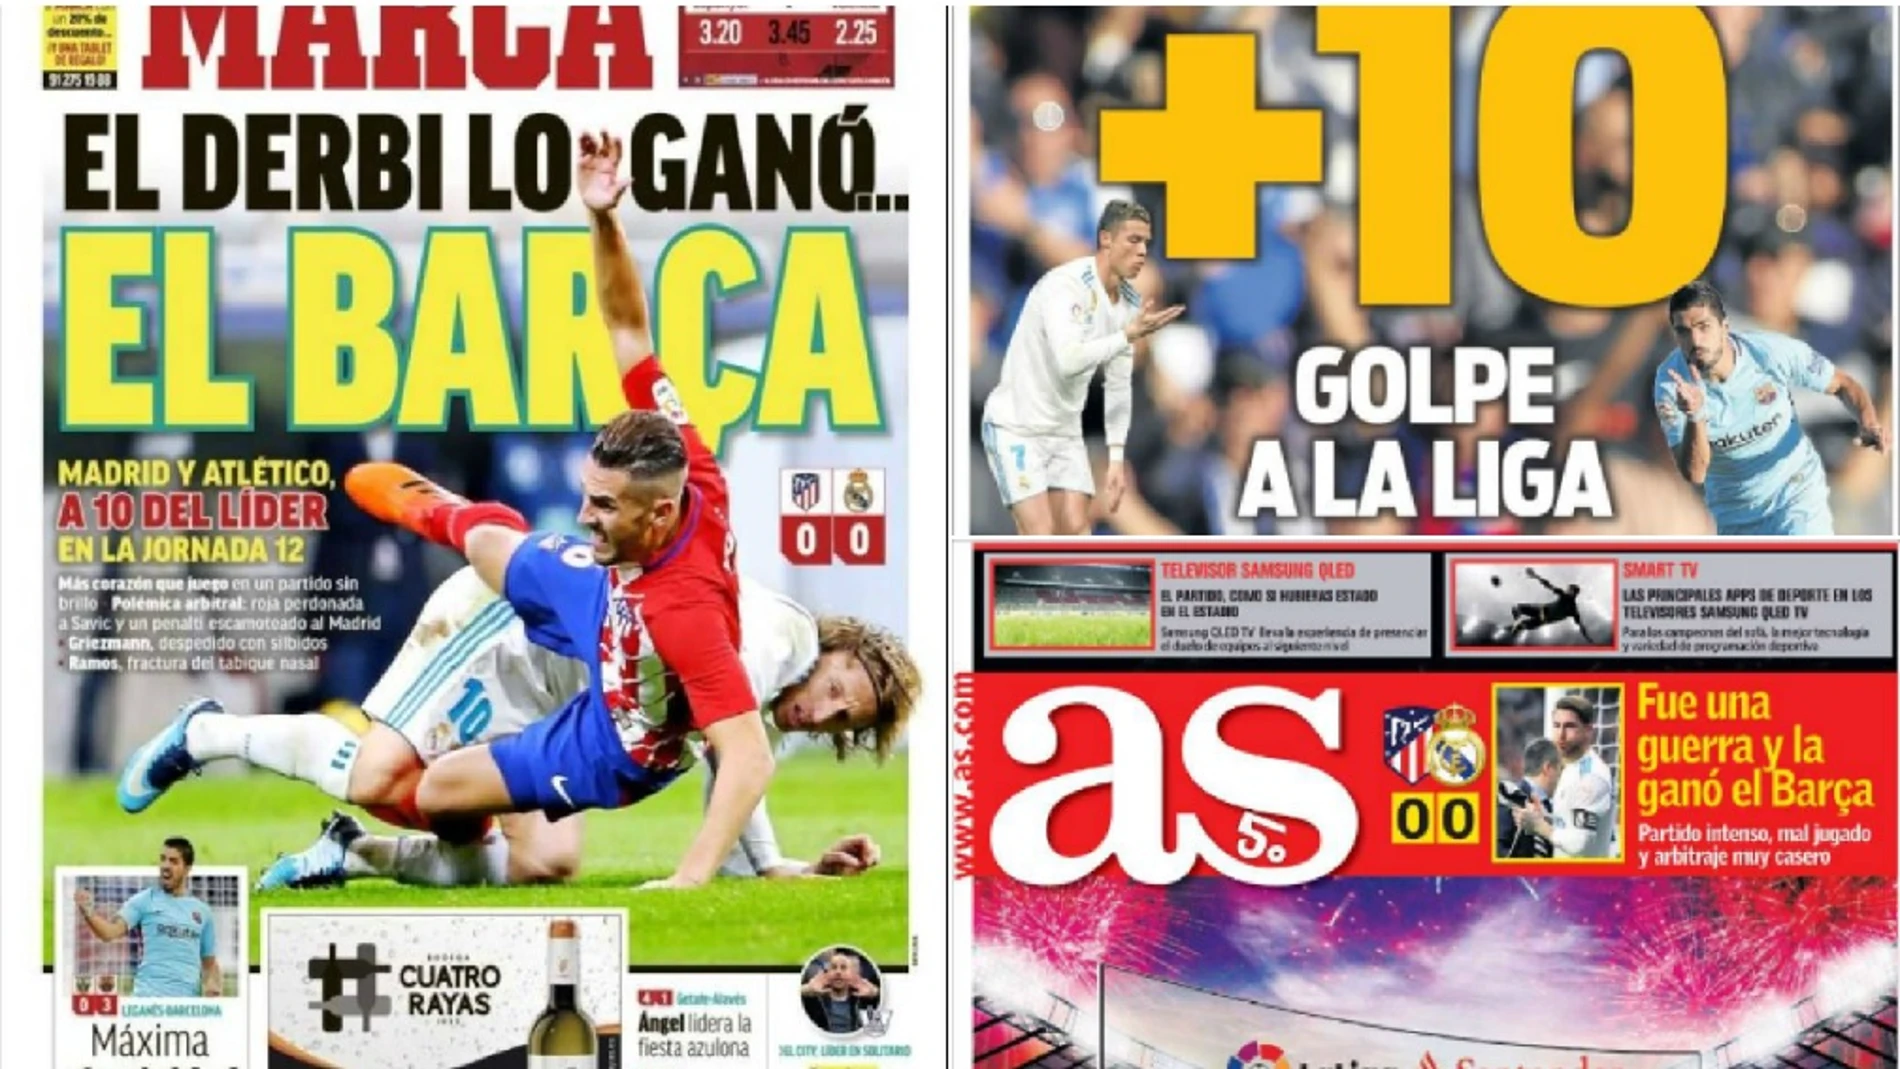 crisantemo freír olvidadizo El empate en el derbi visto por la prensa: "El derbi lo ganó... el Barca",  "+10" y "Fue una guerra y la ganó el Barça"